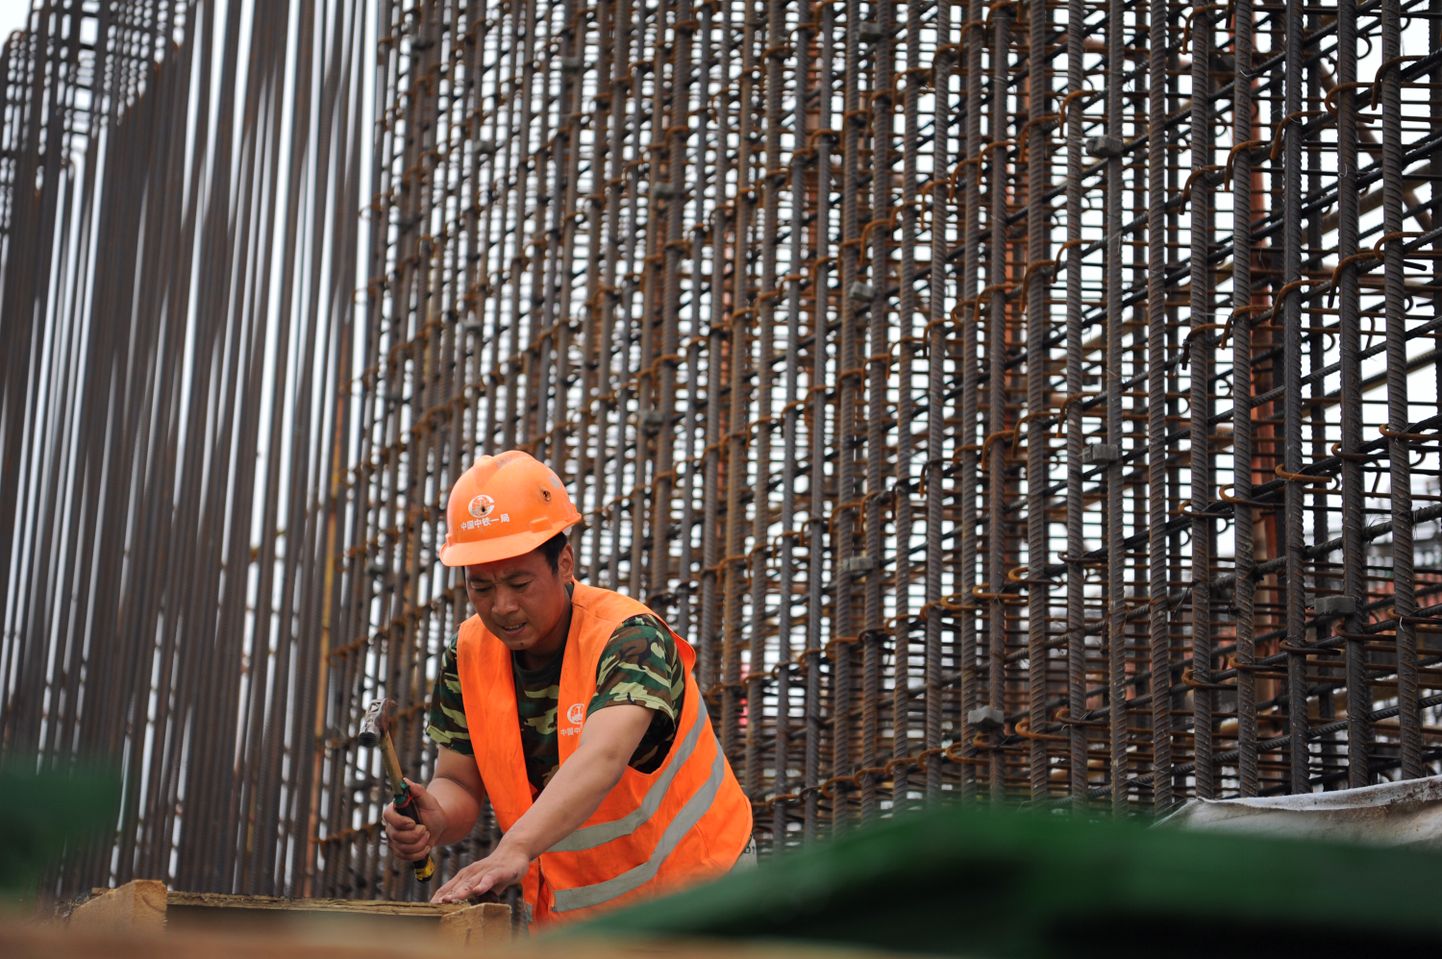 Hiina tööline tänavu juunis Yinchuan-Xi kiirrauteele rajatava jaamahoone ehitusel. Eesti majandusministeeriumi kinnitusel takistavad rahvusvahelised lepped Hiina tööliste toomist Rail Balticu ehitusele.